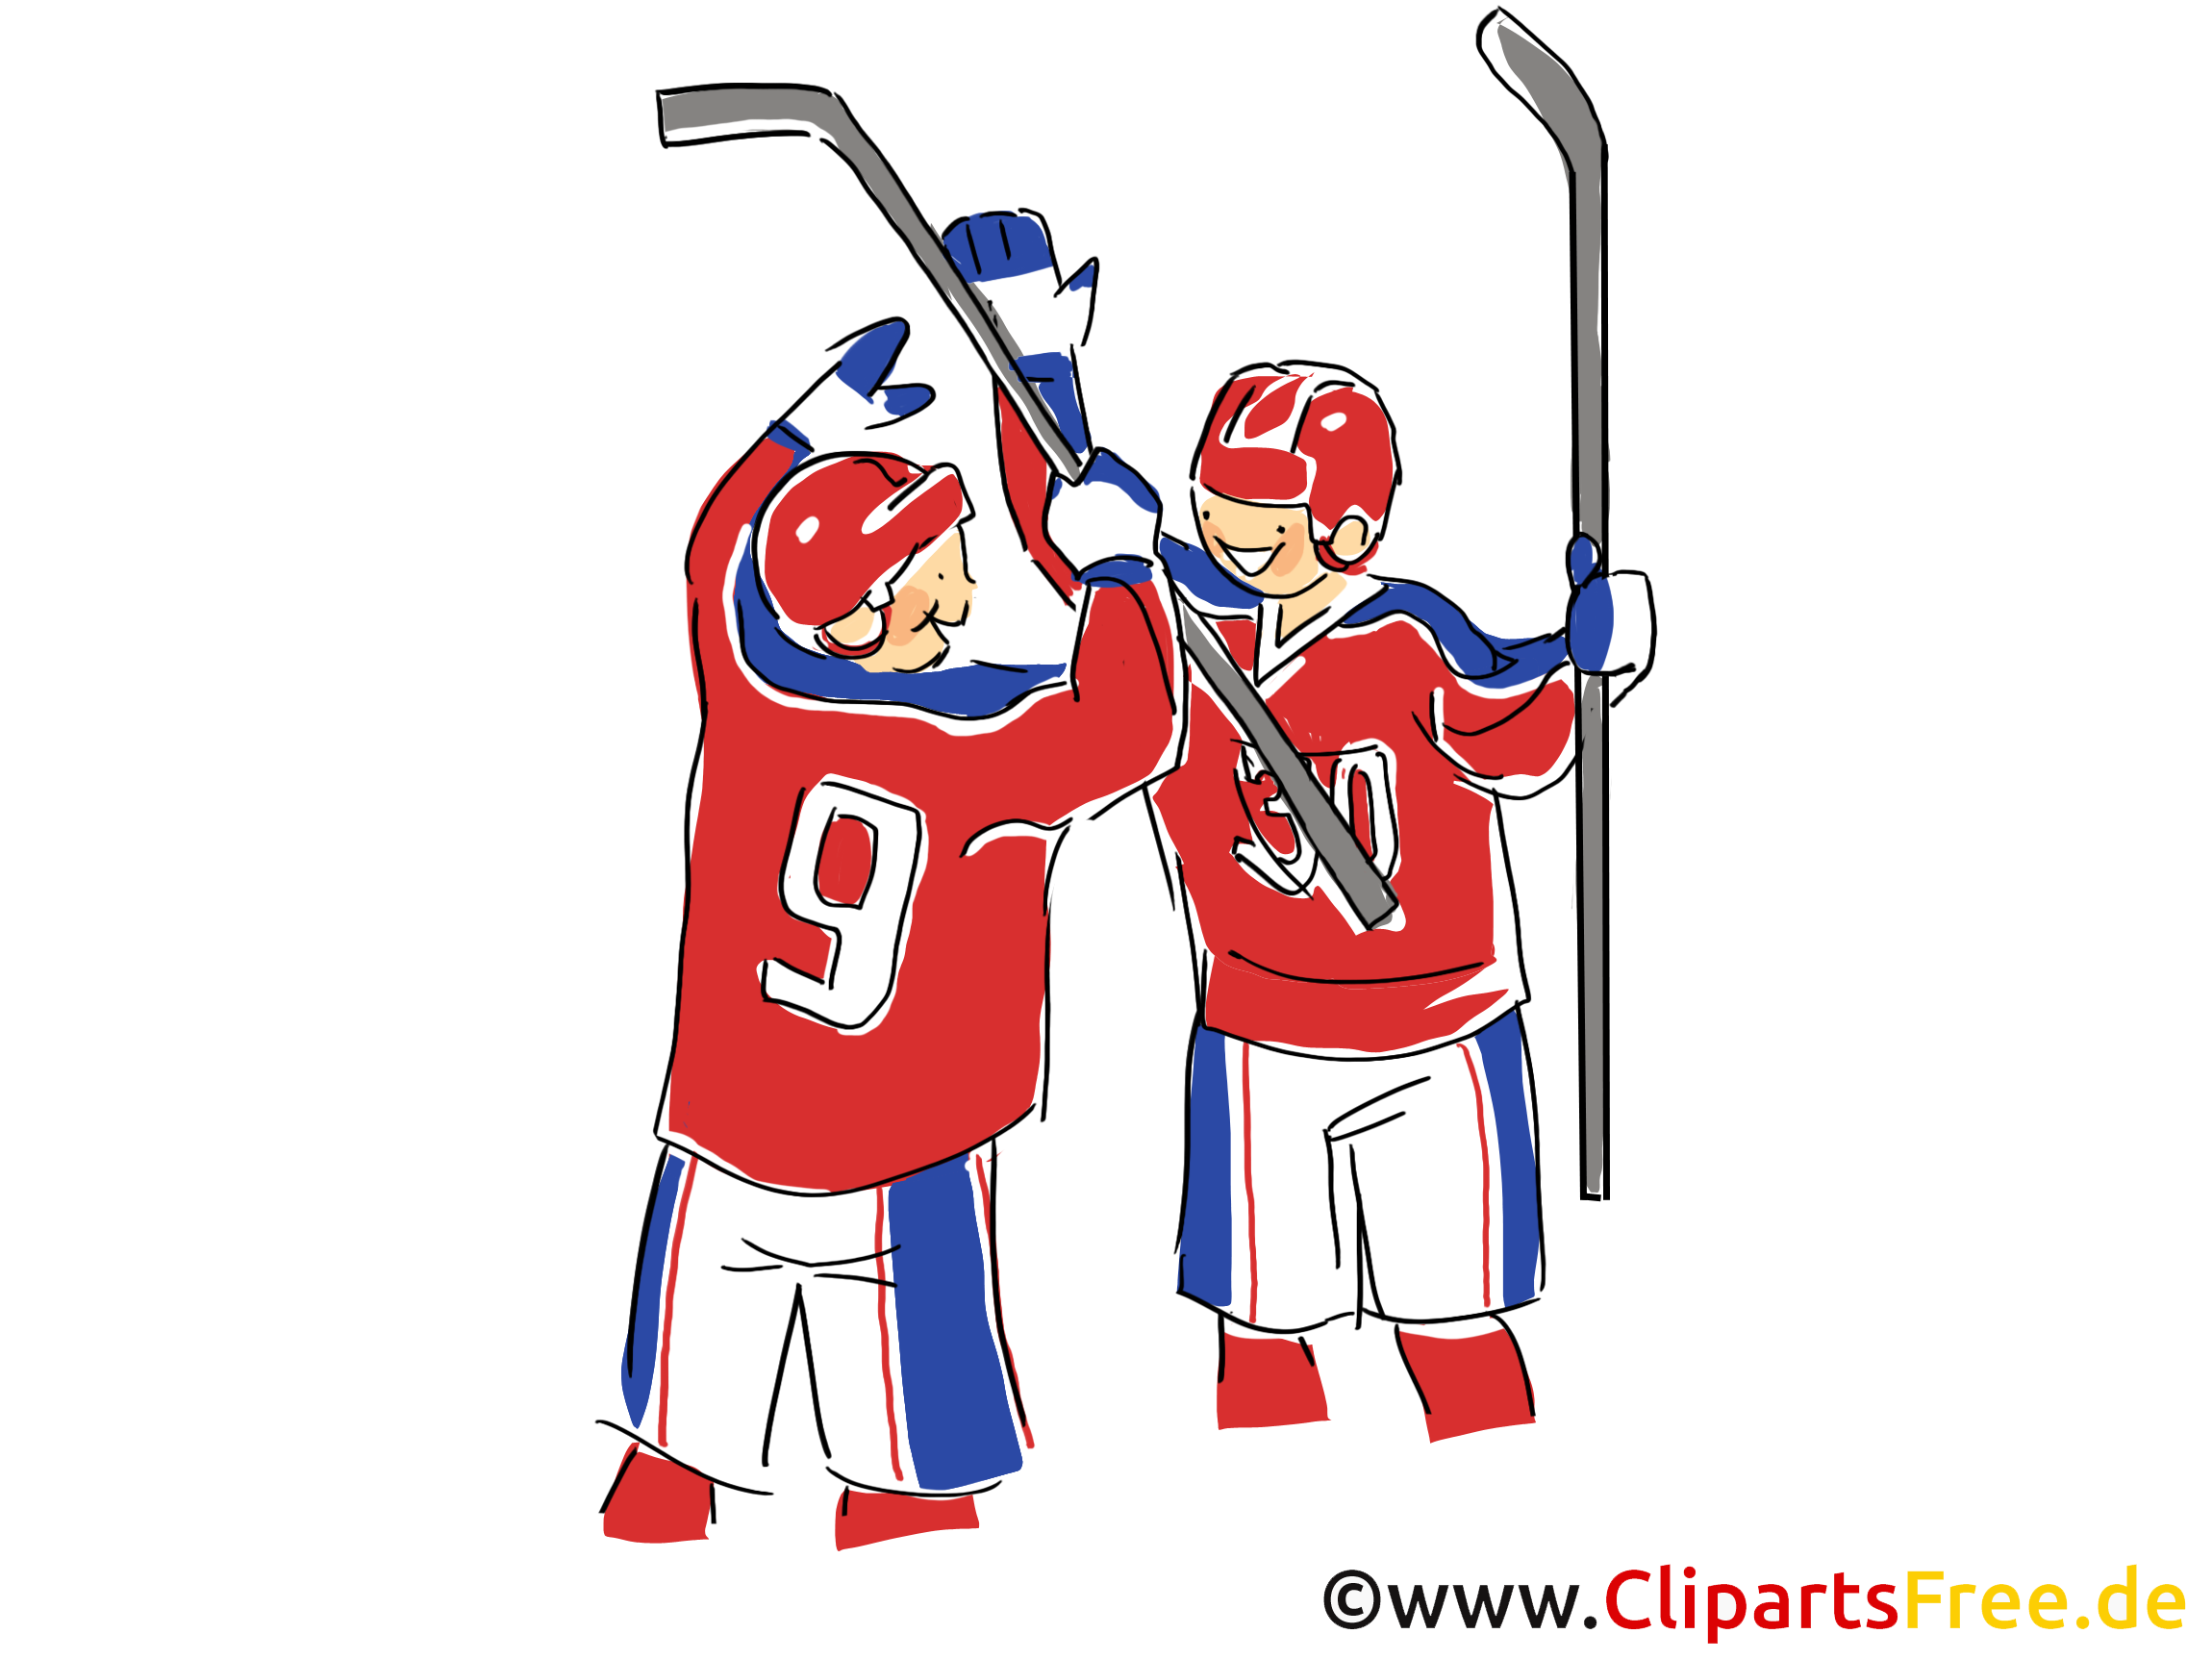 Gagnants illustration gratuite - Hockey clipart